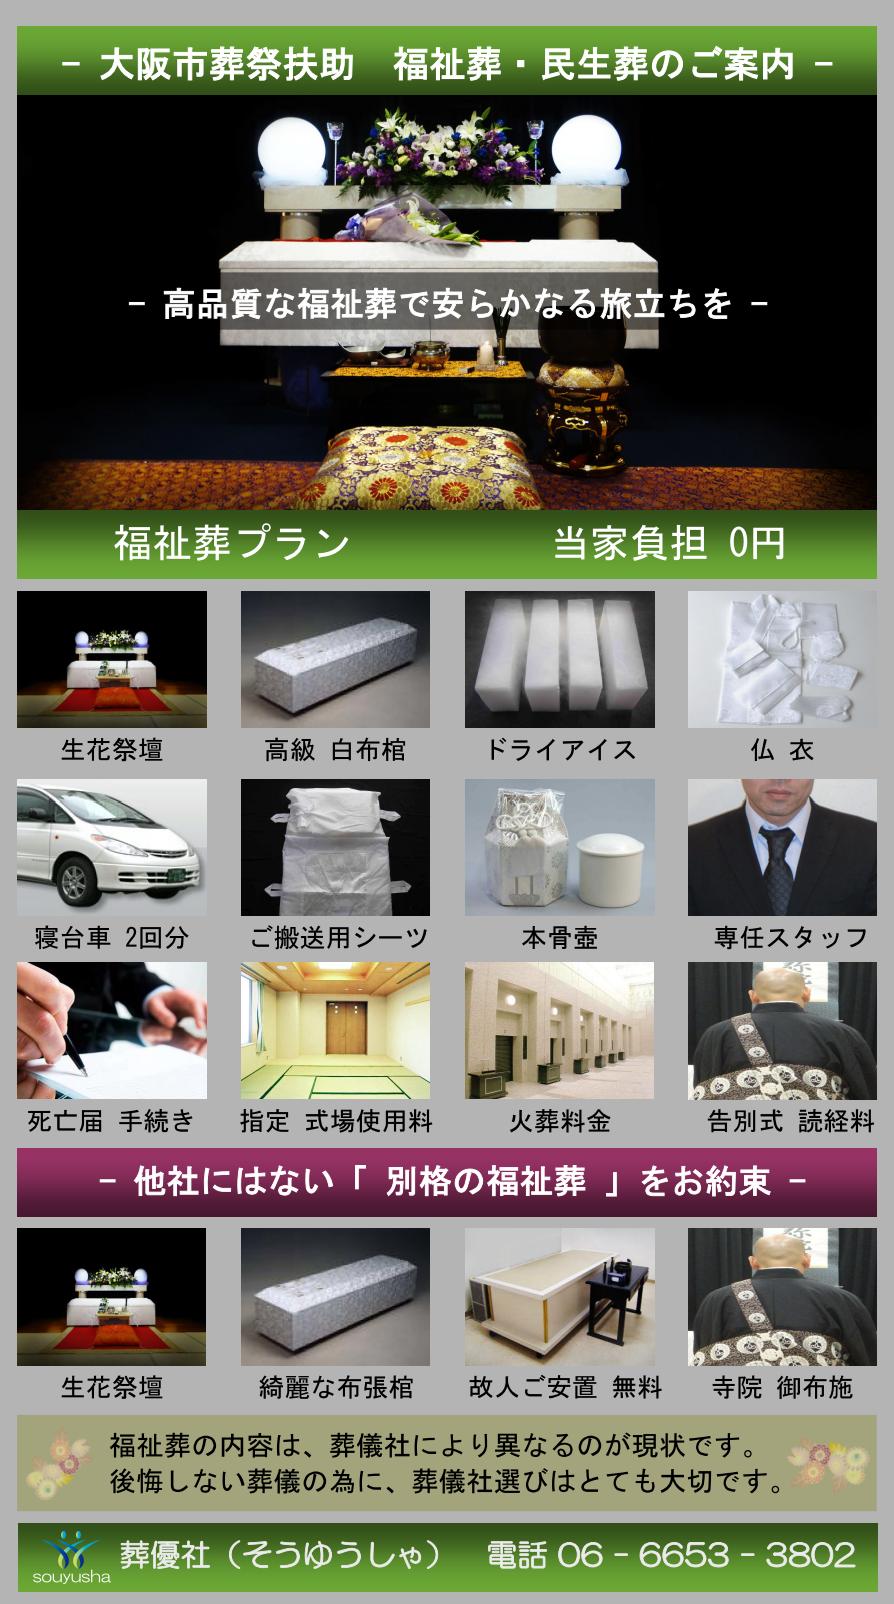 大阪市 西淀川区での福祉葬、生活保護者のお葬式のご案内